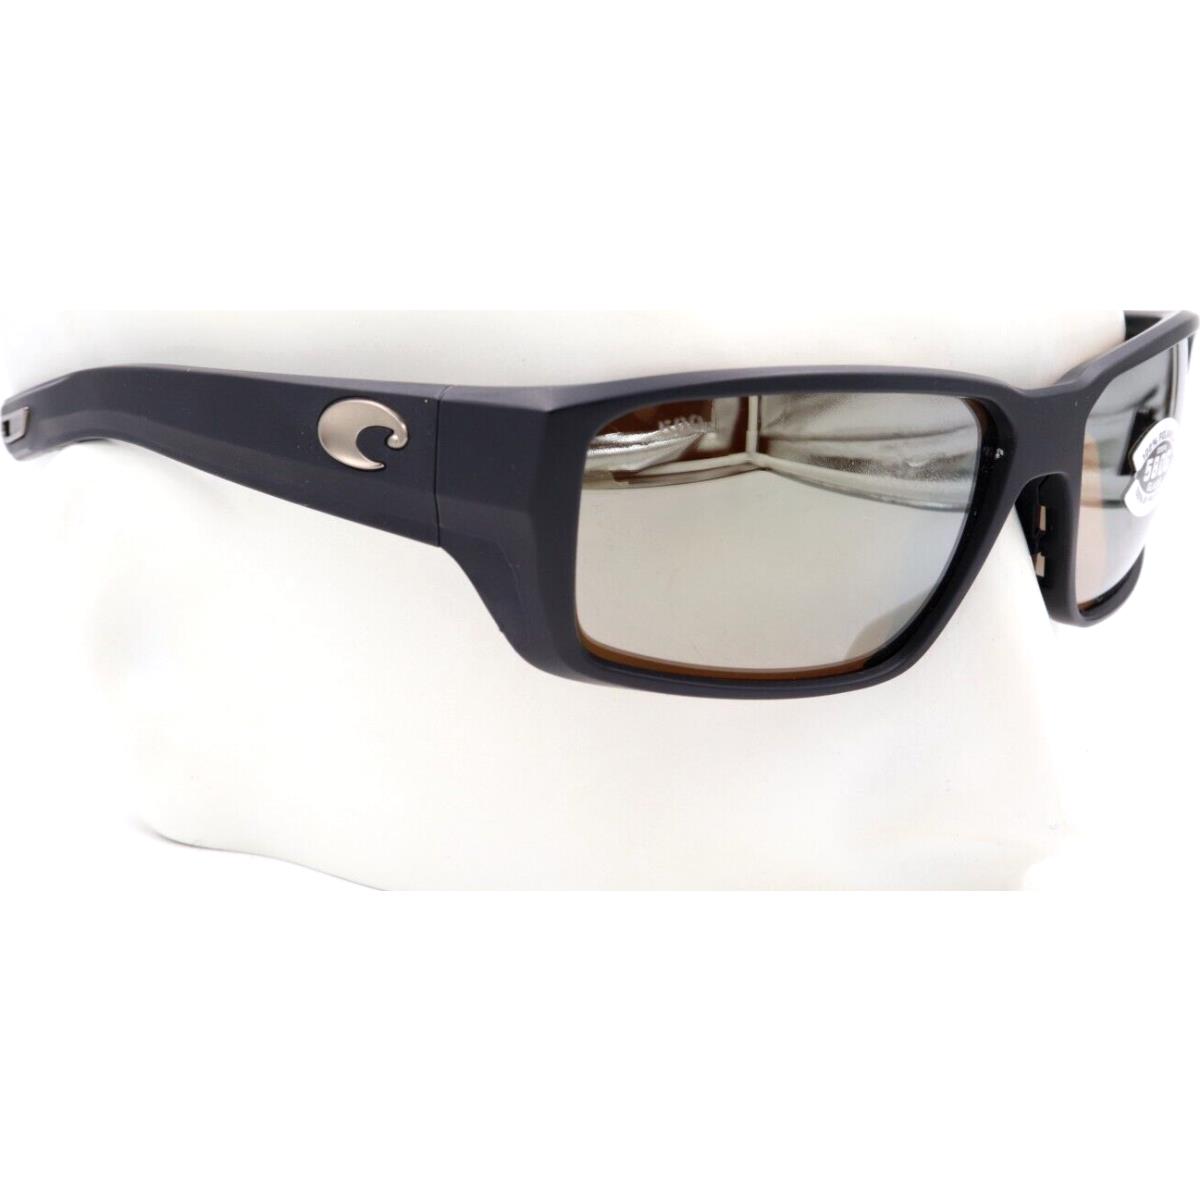 Costa Del Mar sunglasses Fantail PRO - 11 matte black Frame, Copper / silver Lens 0